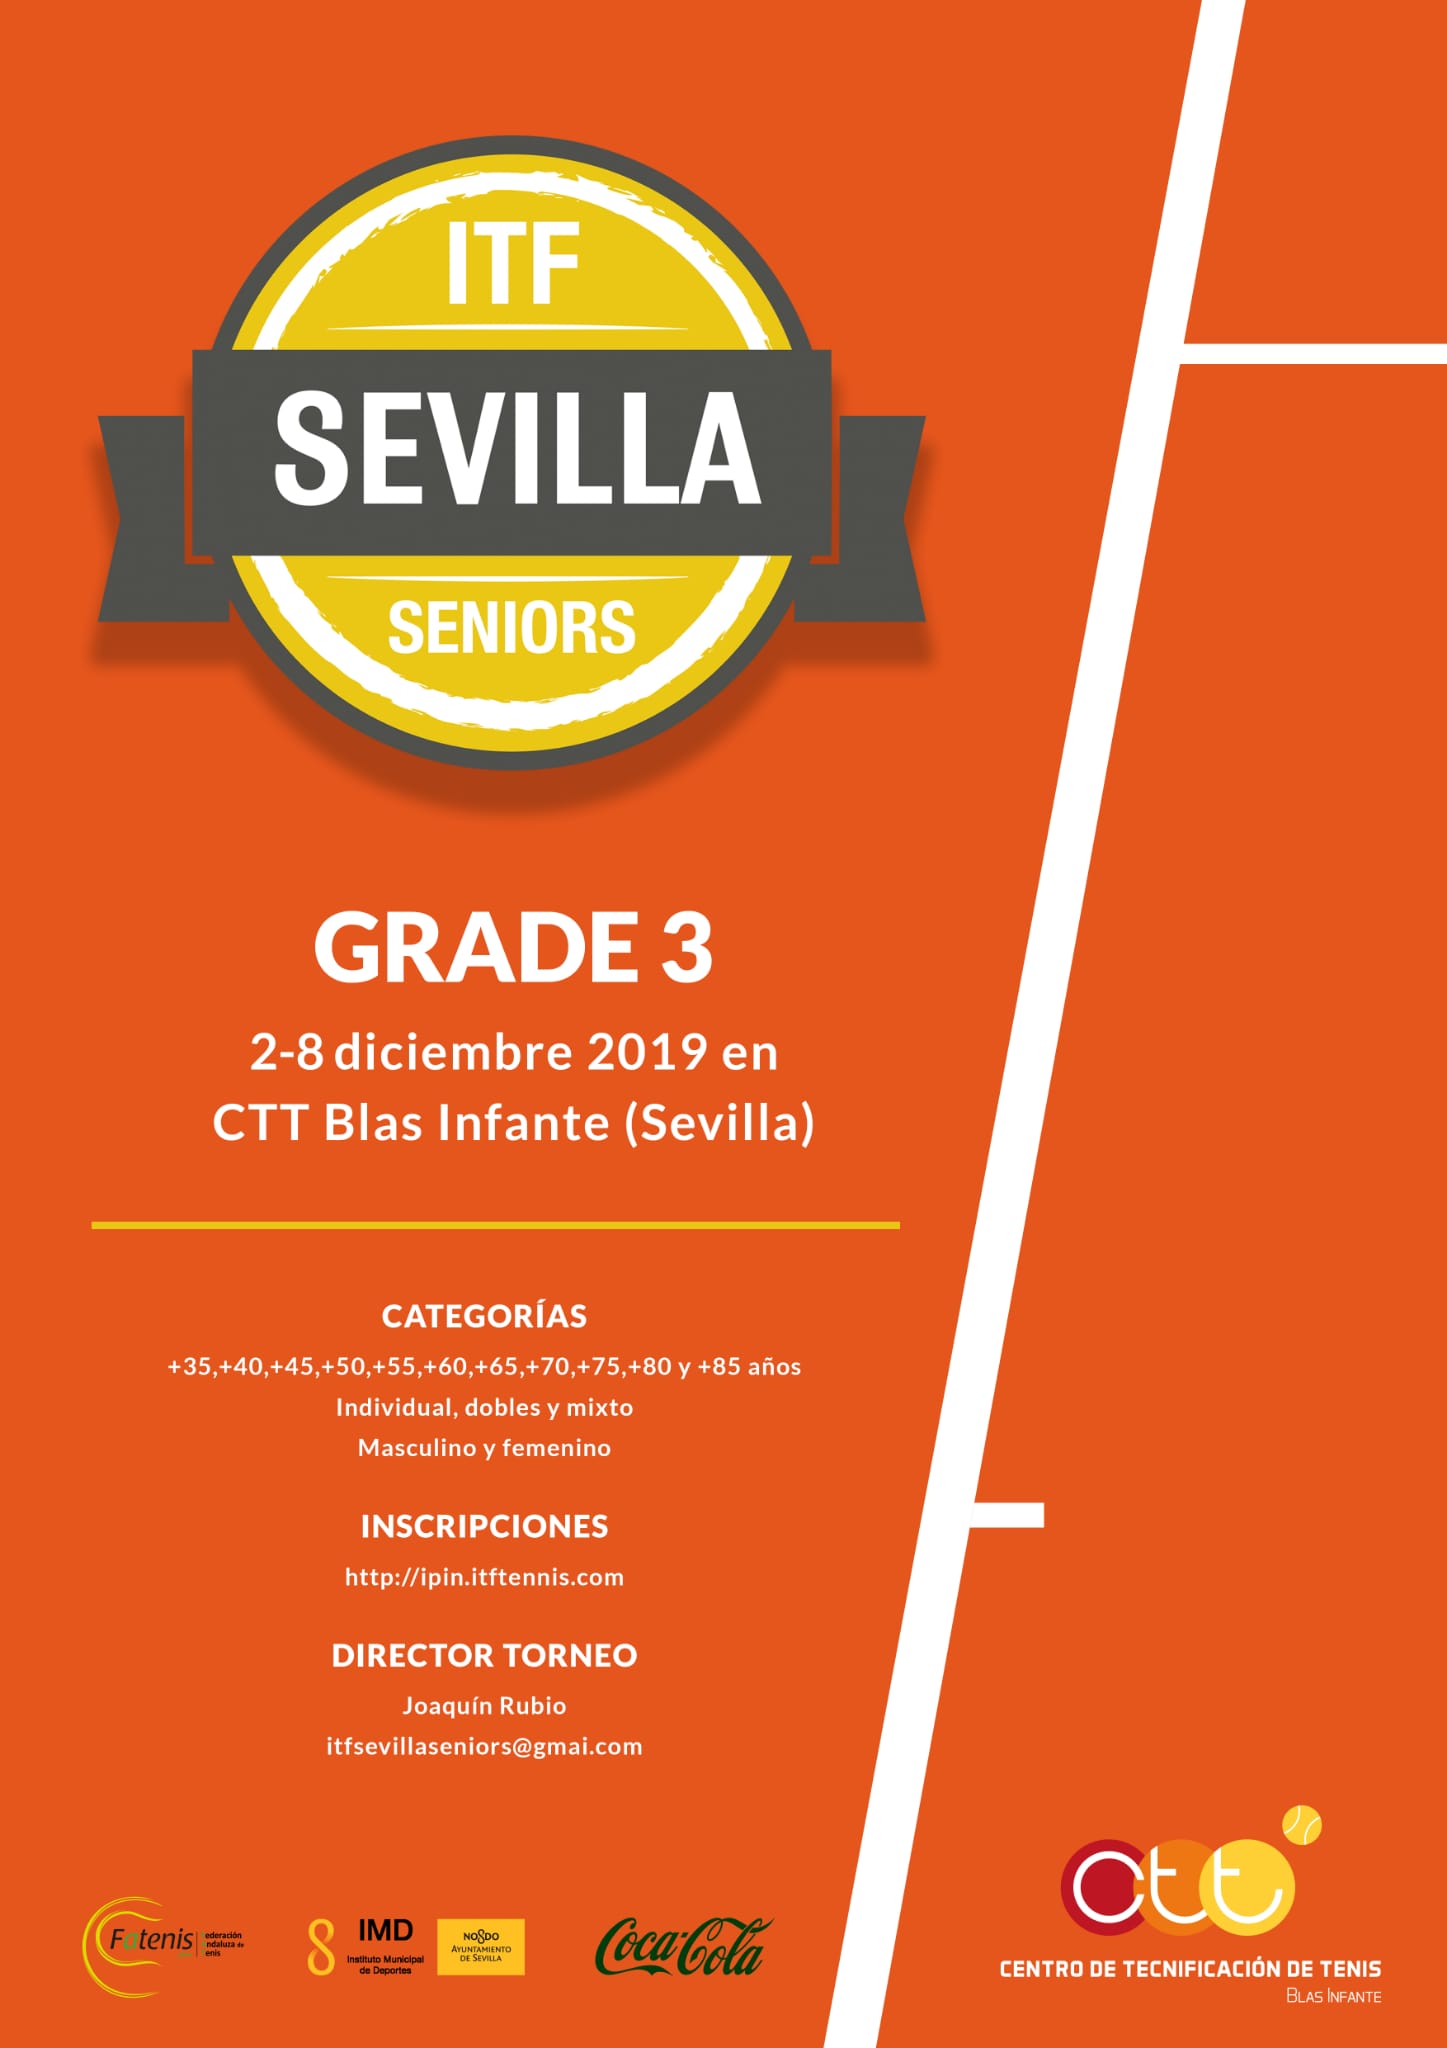 ITF Sevilla Seniors grade 3